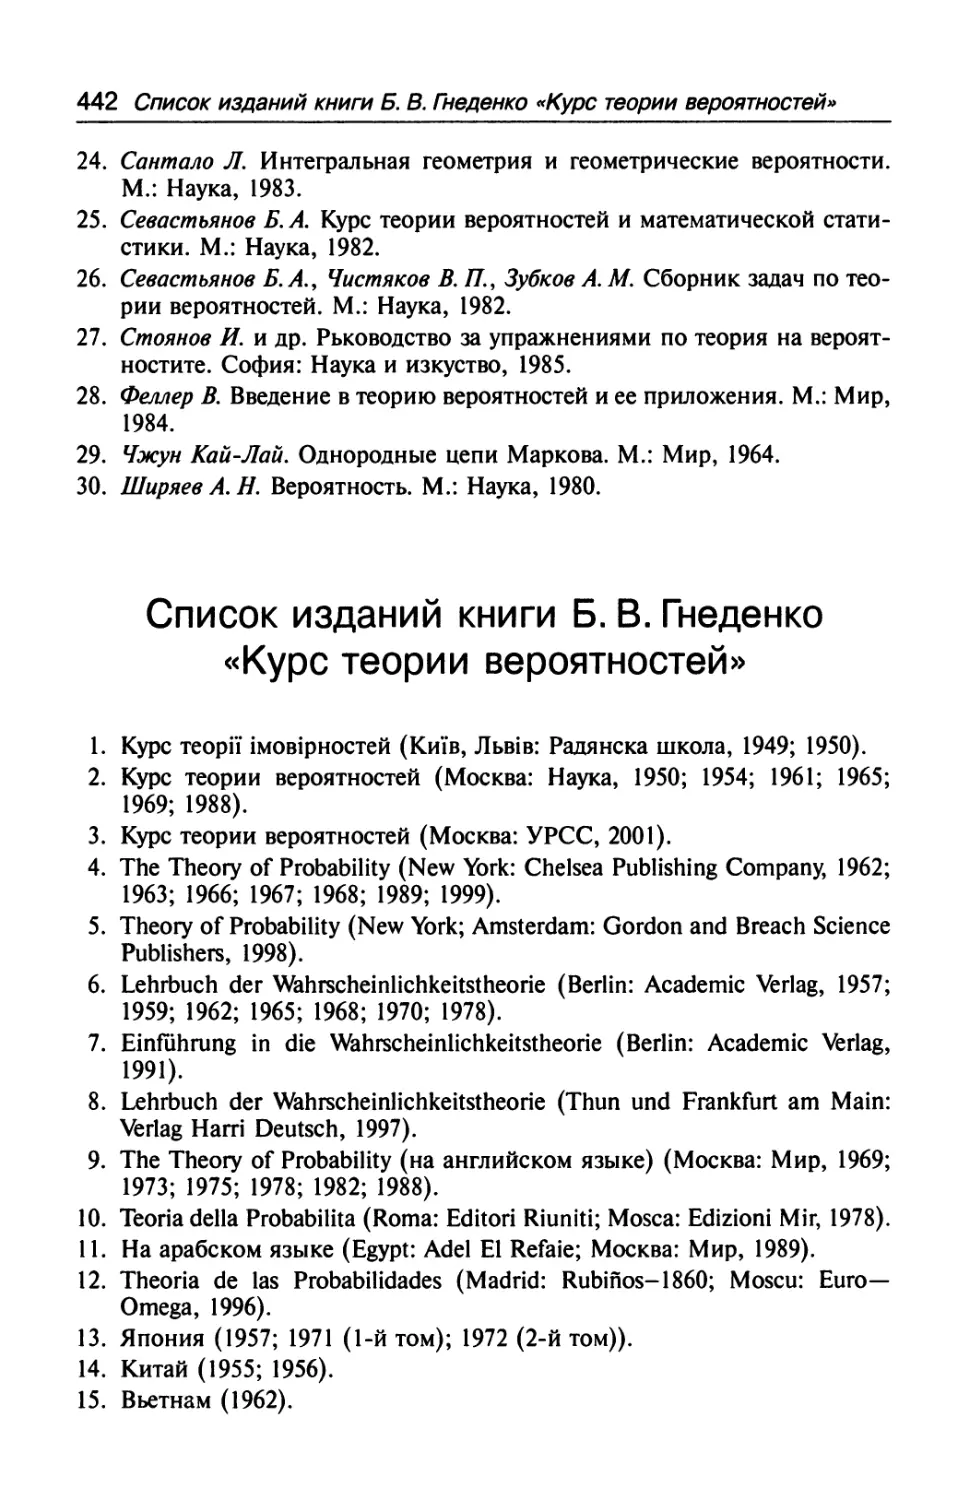 Список изданий книги Б. В. Гнеденко «Курс теории вероятностей»